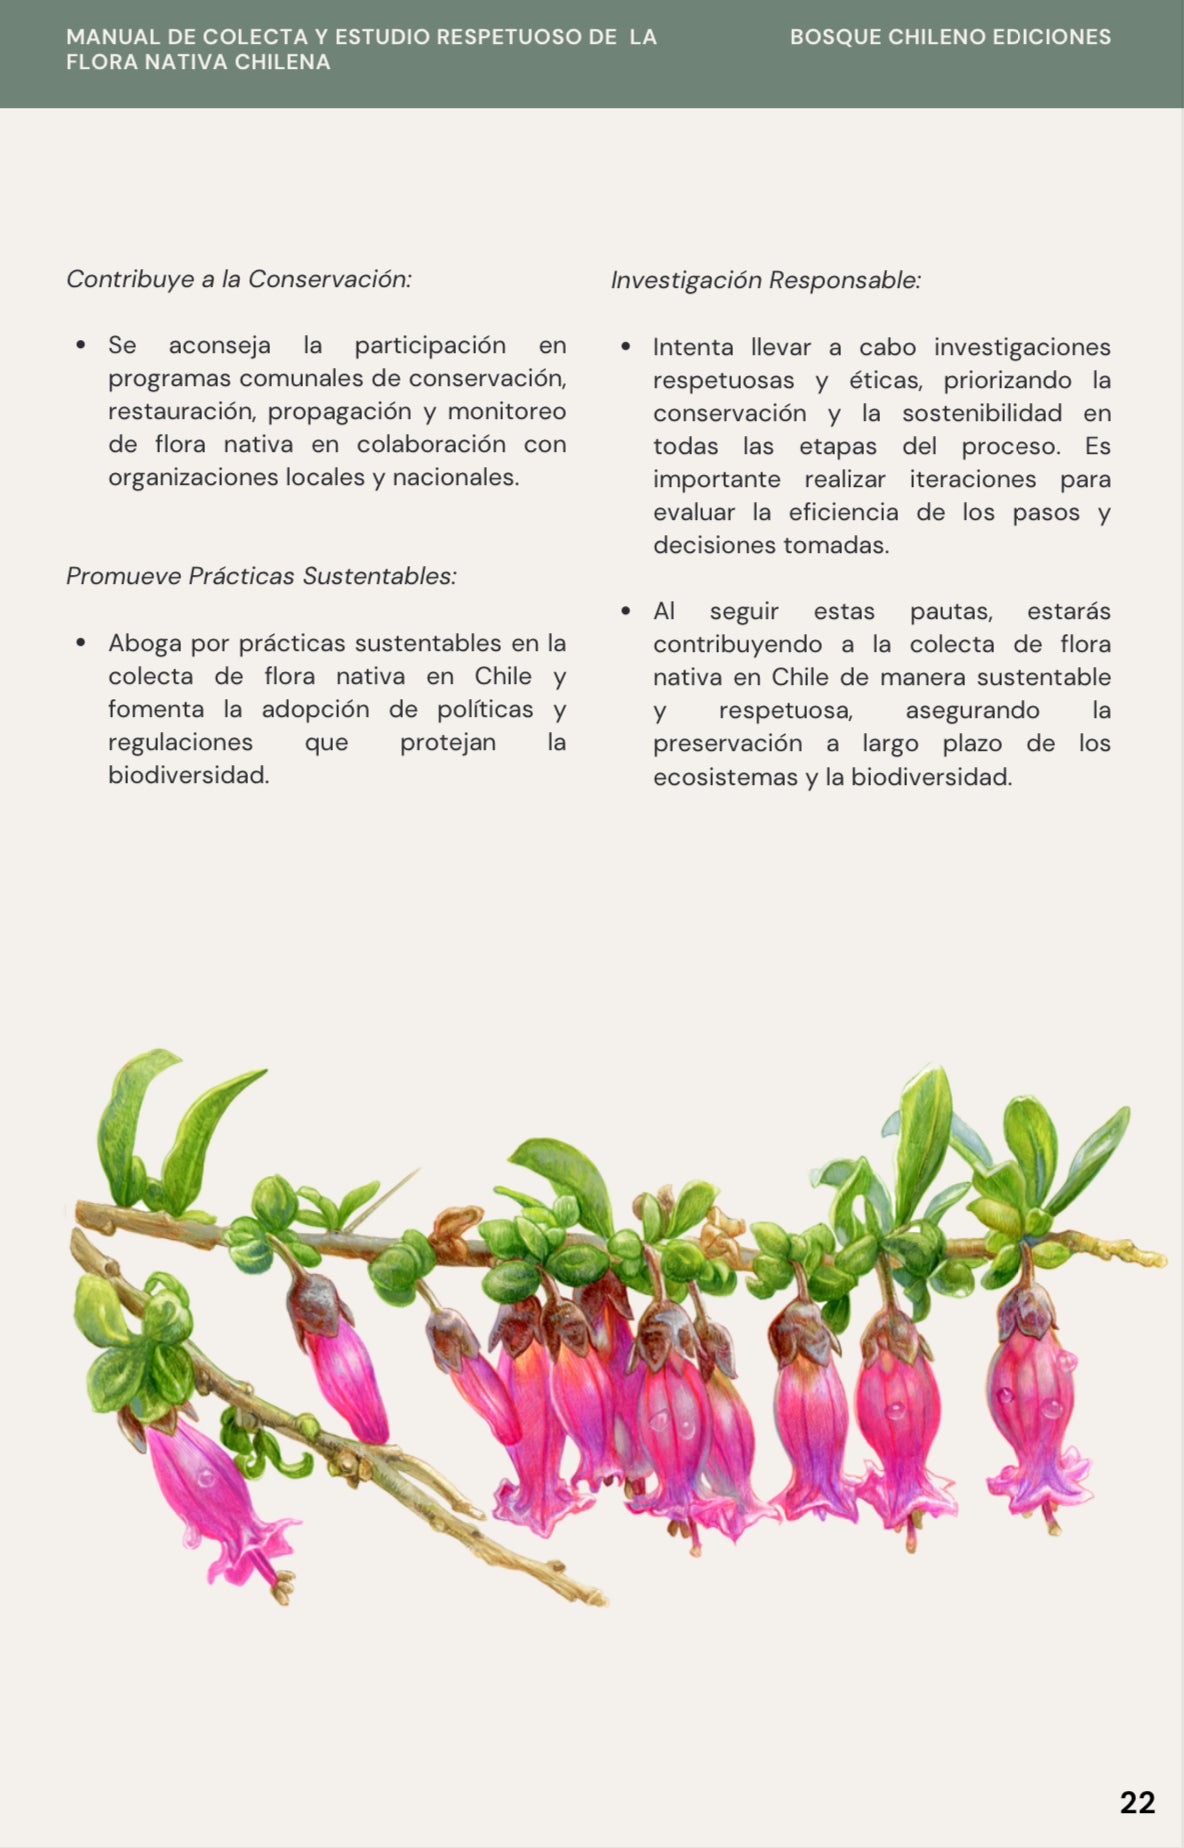 Ebook - Manual de campo para el estudio respetuoso de la flora nativa chilena